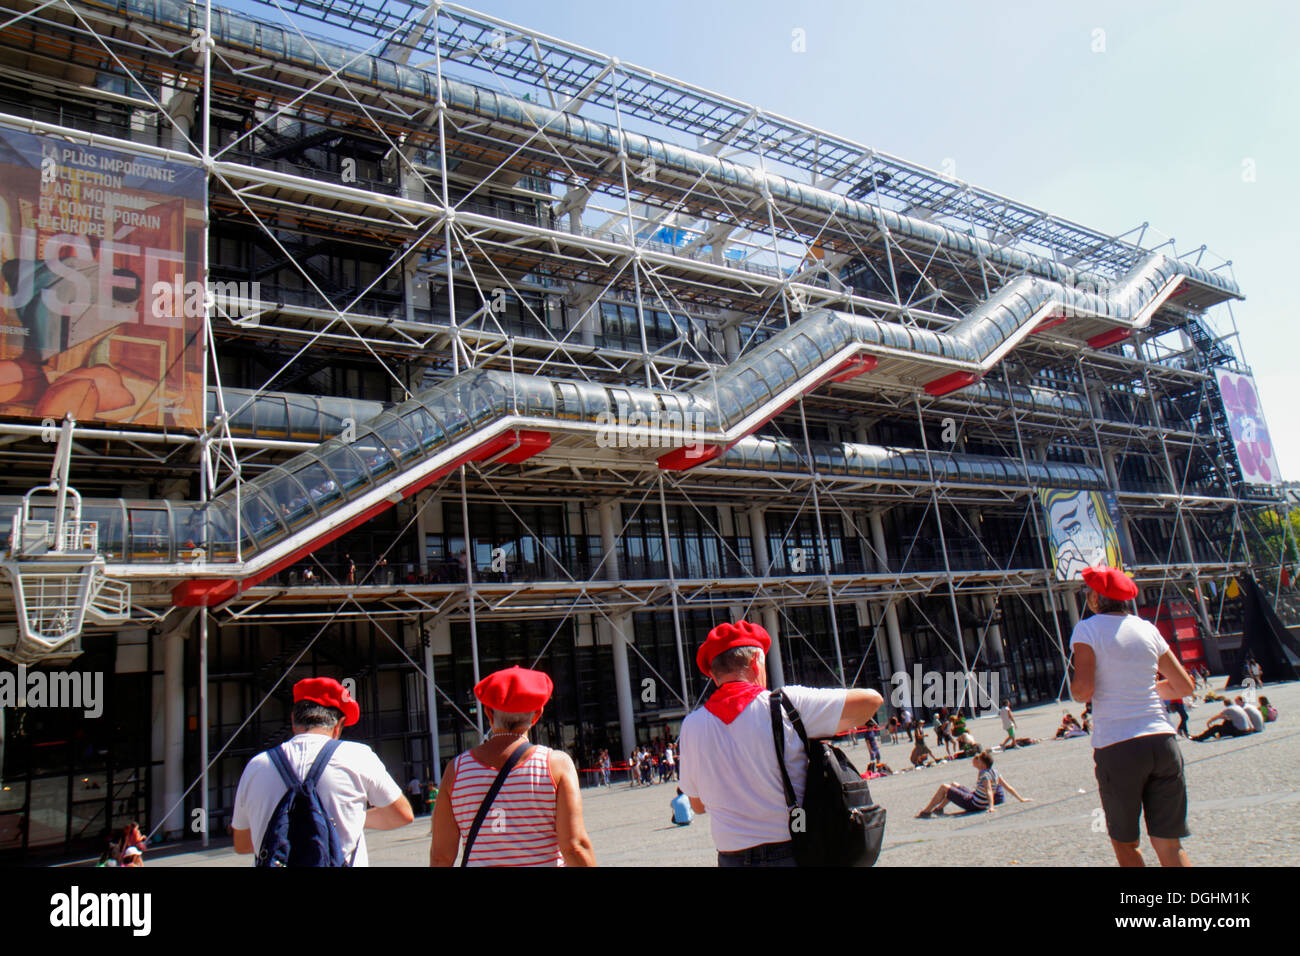 Parigi Francia,4° arrondissement,Centre Georges Pompidou,centro,fronte,esterno,ingresso,uomo uomini maschio,adulto,adulti,donna donna donne,chapeau,ha Foto Stock